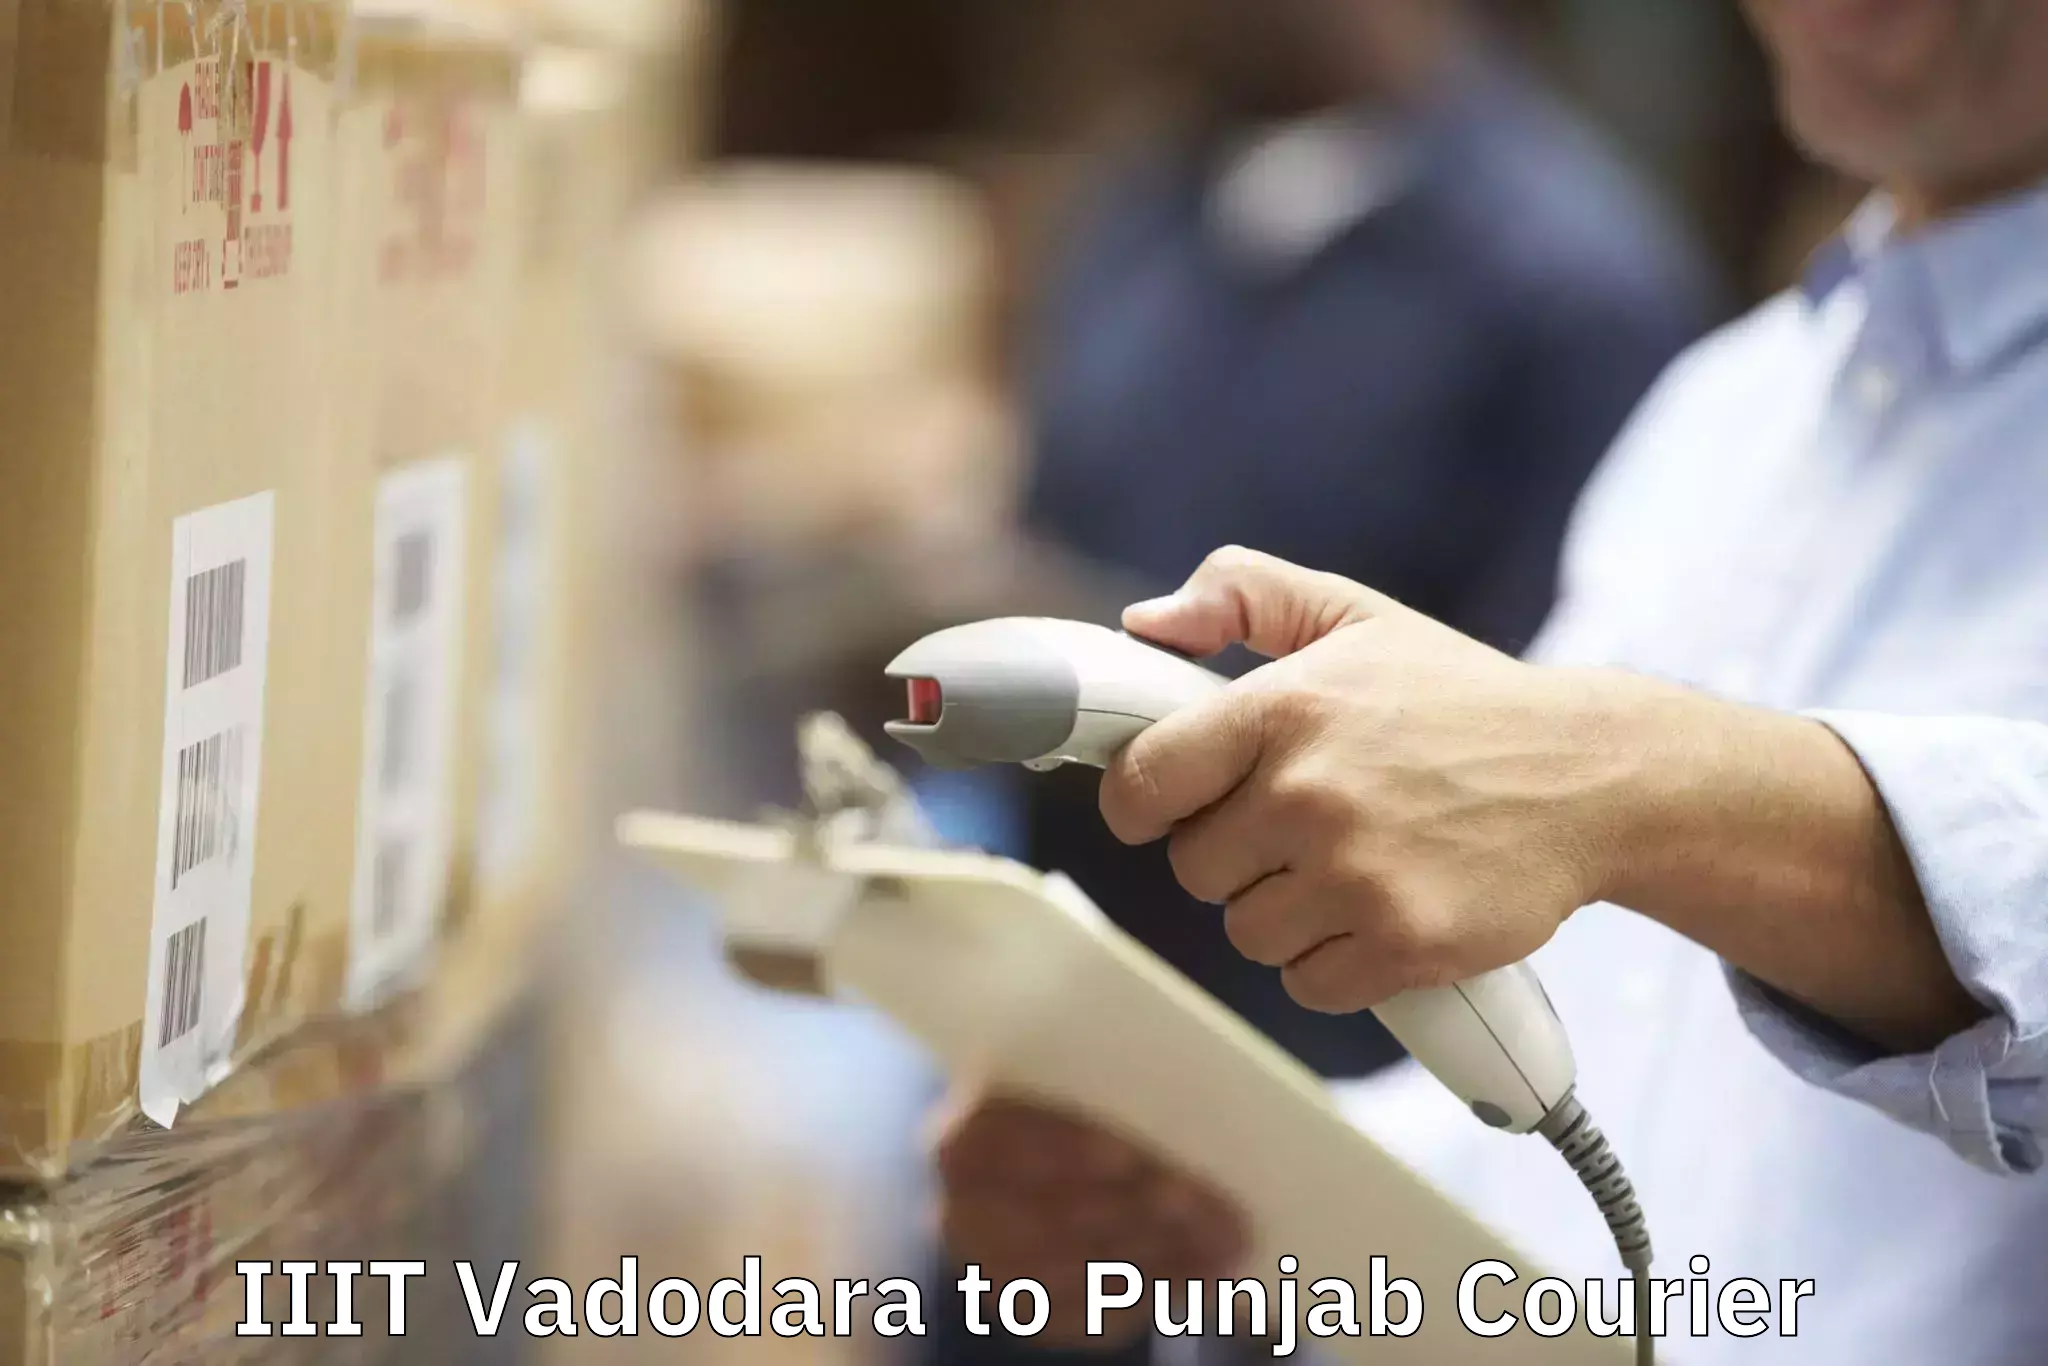 Moving and packing experts IIIT Vadodara to Punjab